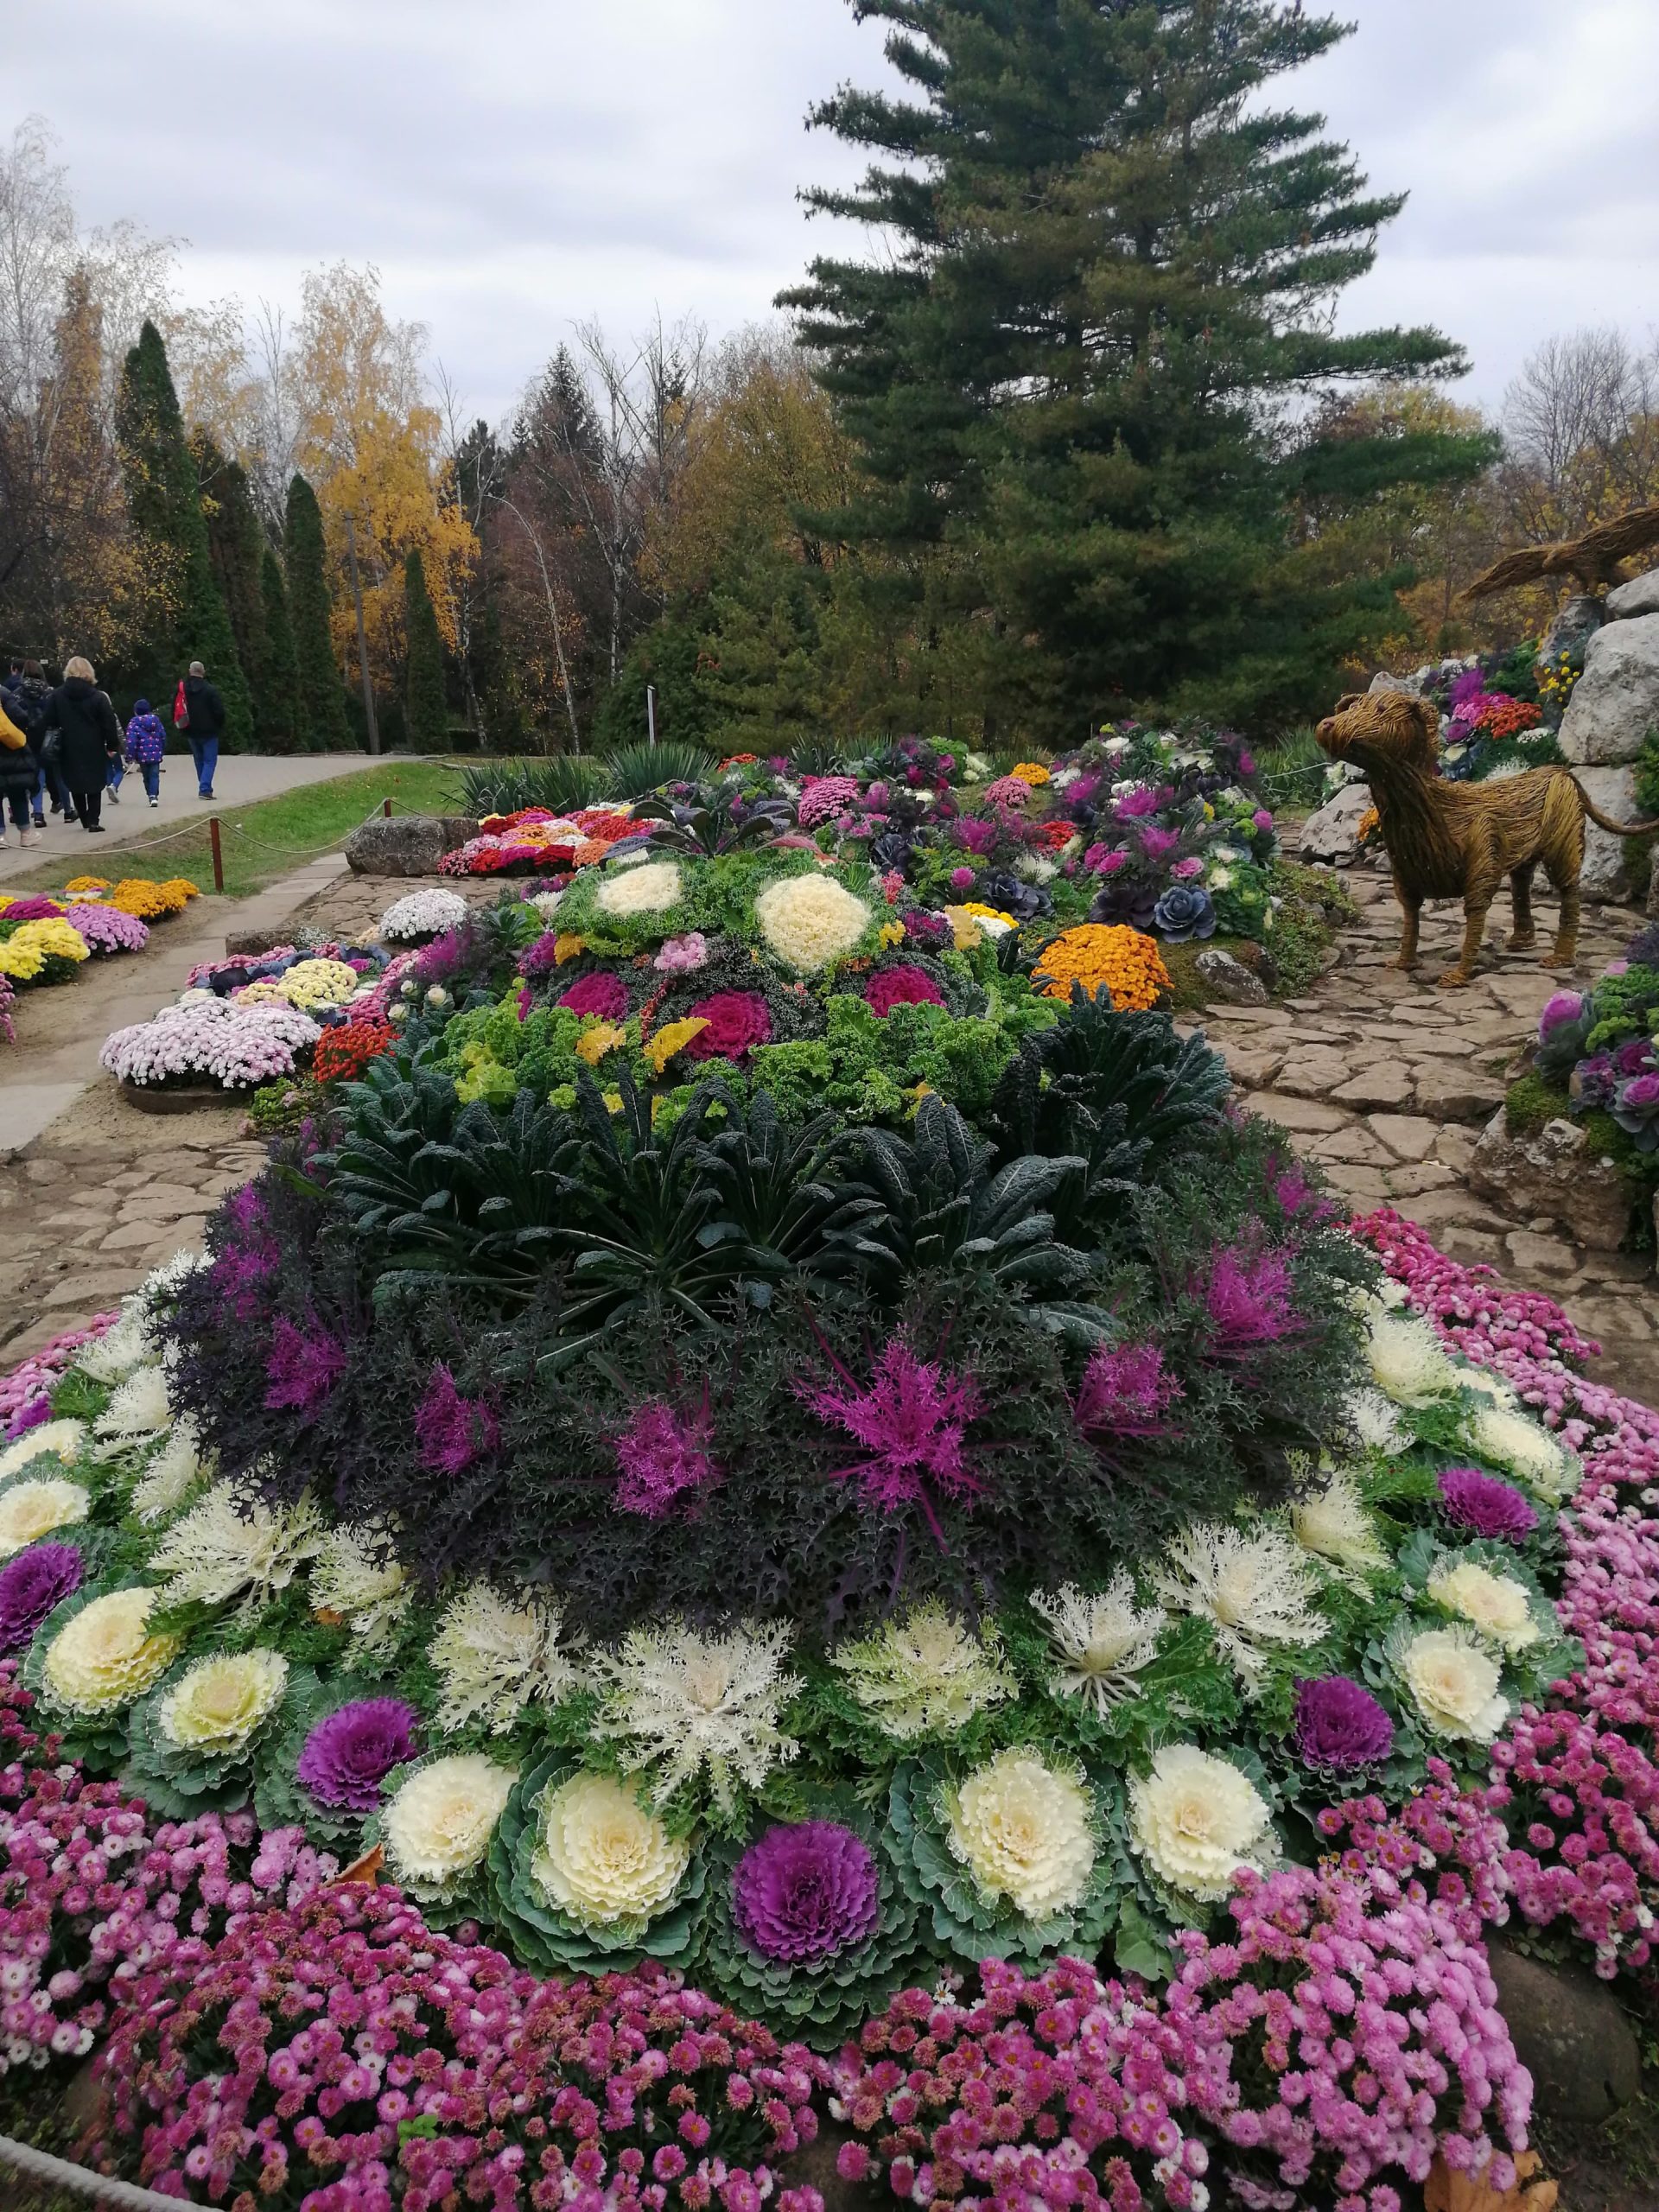 EXCLUSIV. Imagini fabuloase cu flori și legume pe care nu le-ați mai văzut, de la o  expoziție inedită din Grădina Botanică Iași